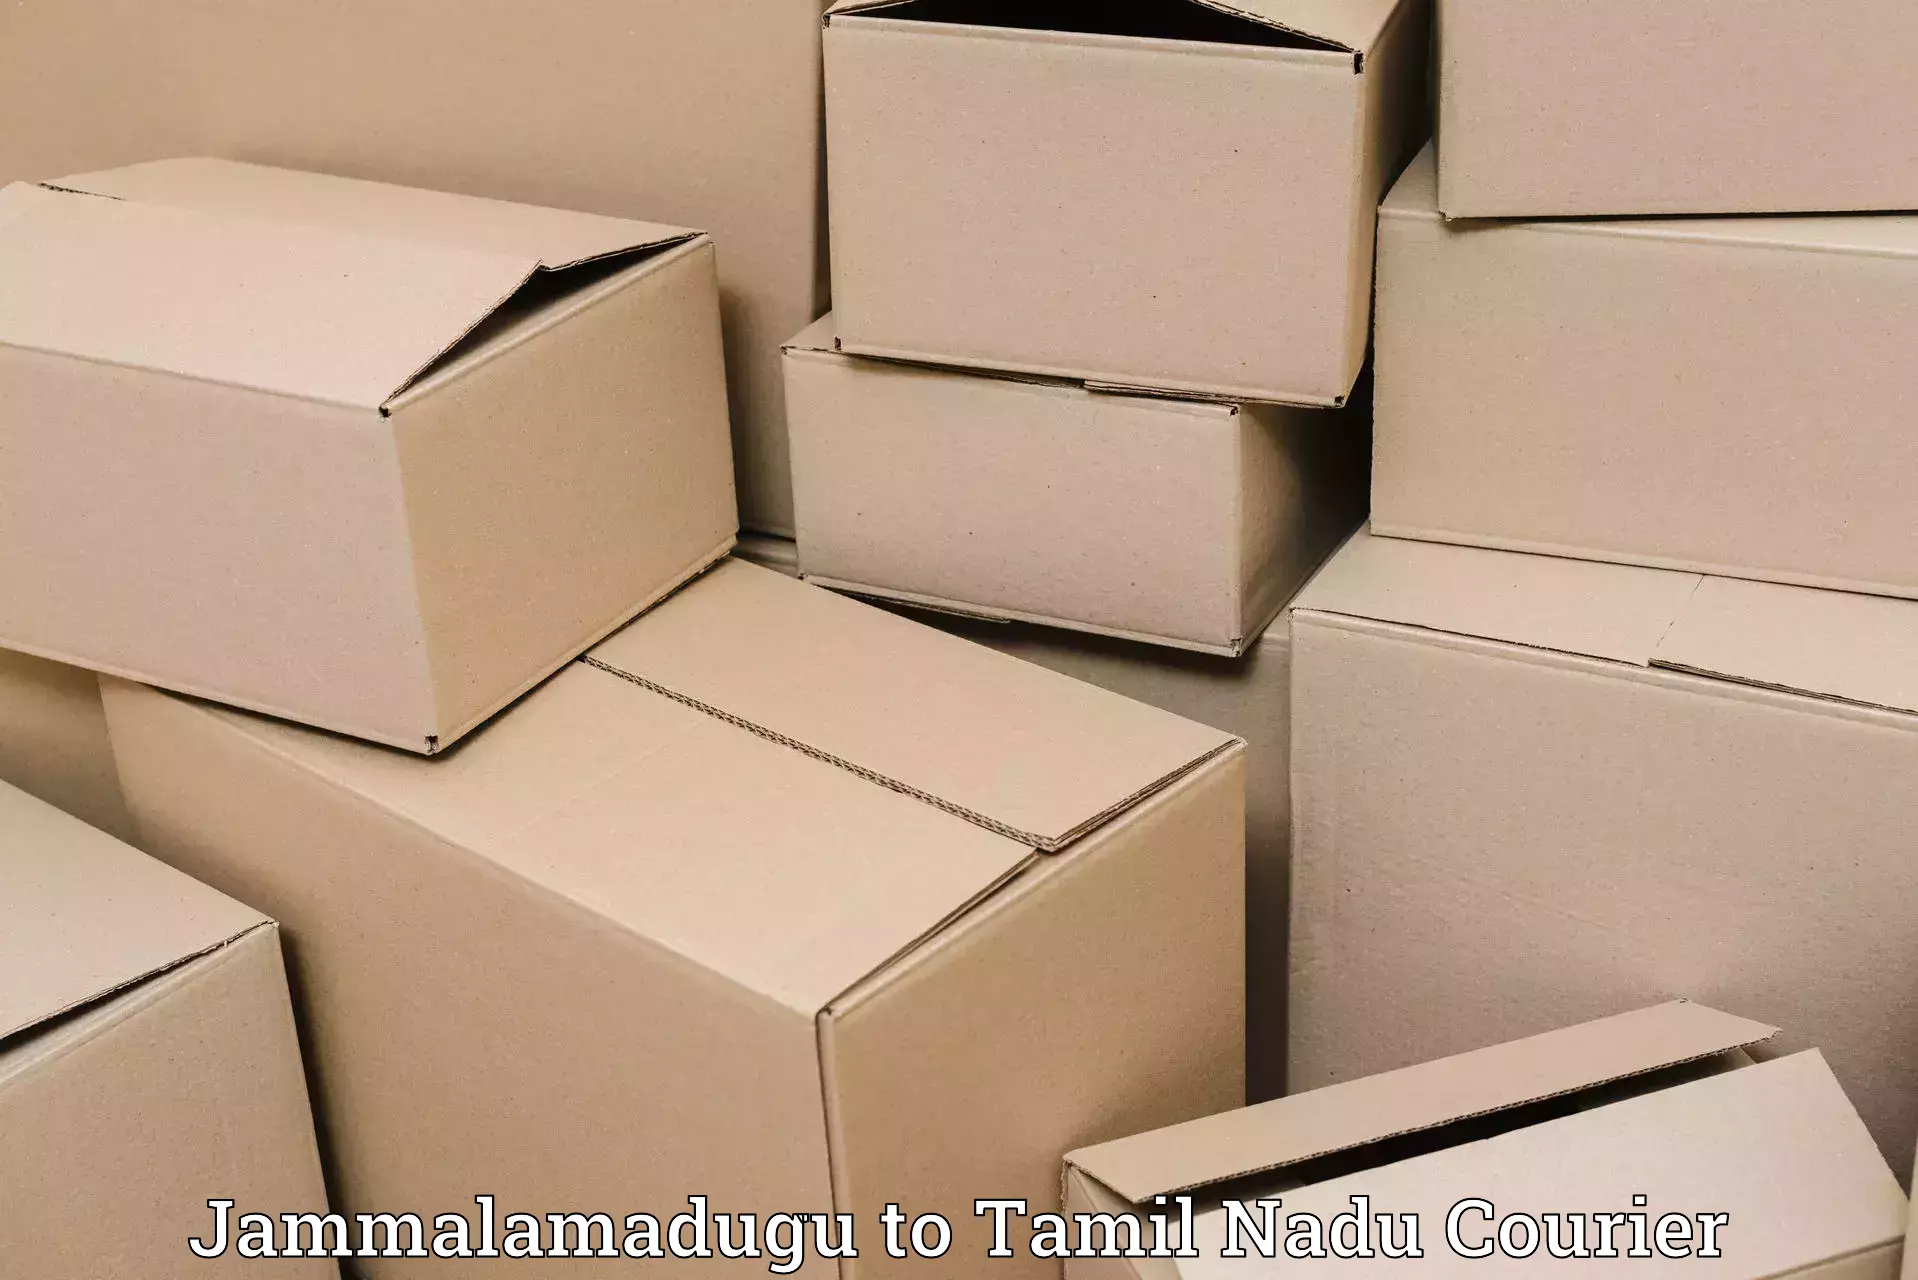 Expedited shipping methods Jammalamadugu to Ennore Port Chennai